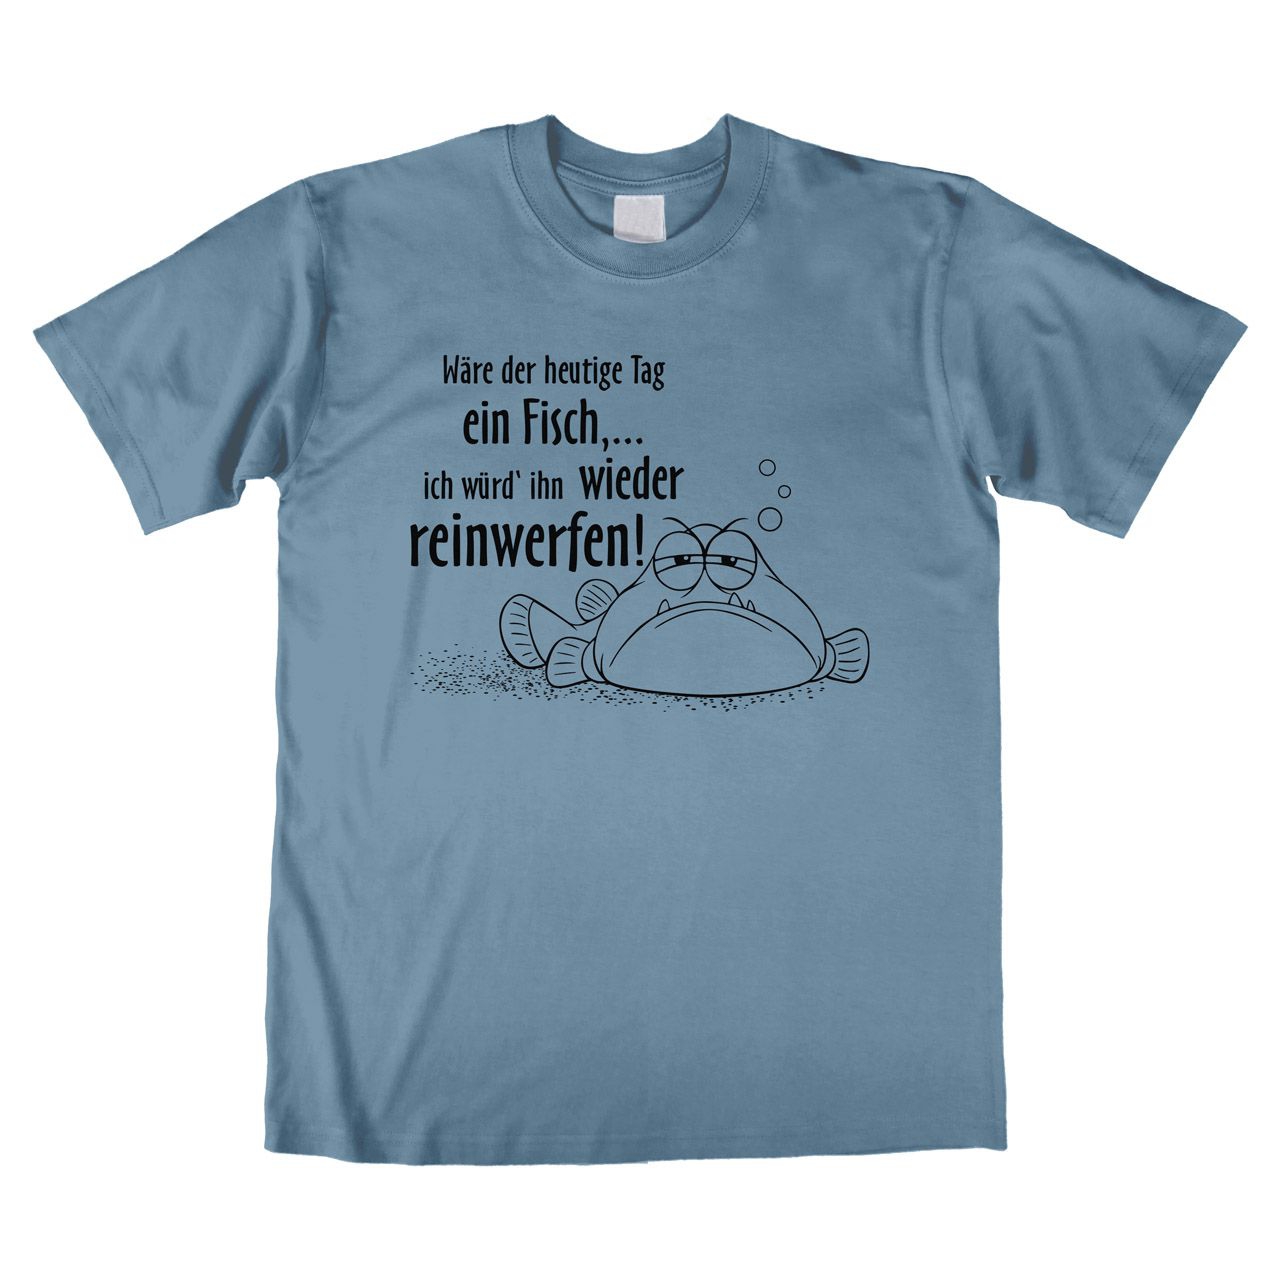 Wäre der heutige Tag ein Fisch Unisex T-Shirt denim Medium